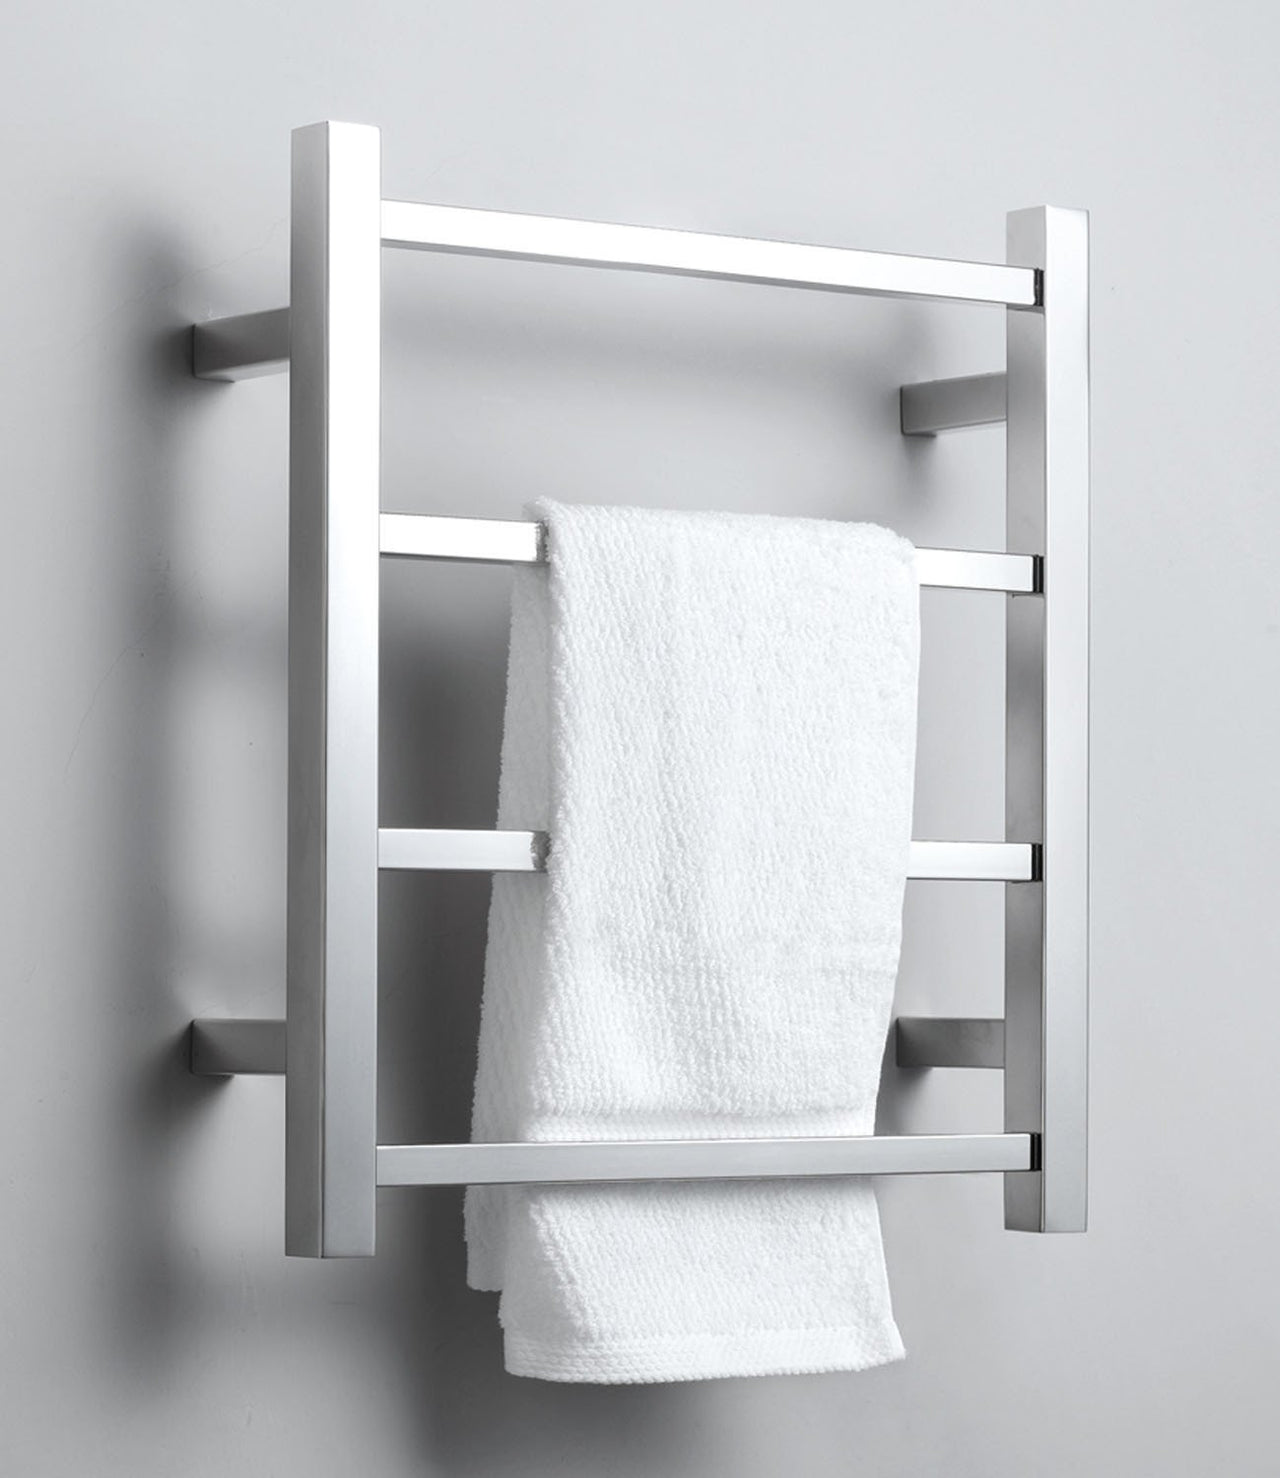 Virtu USA Koze 120 Wall Mounted Electric Towel Warmer in Polished Chrome Towel Warmers Virtu USA 